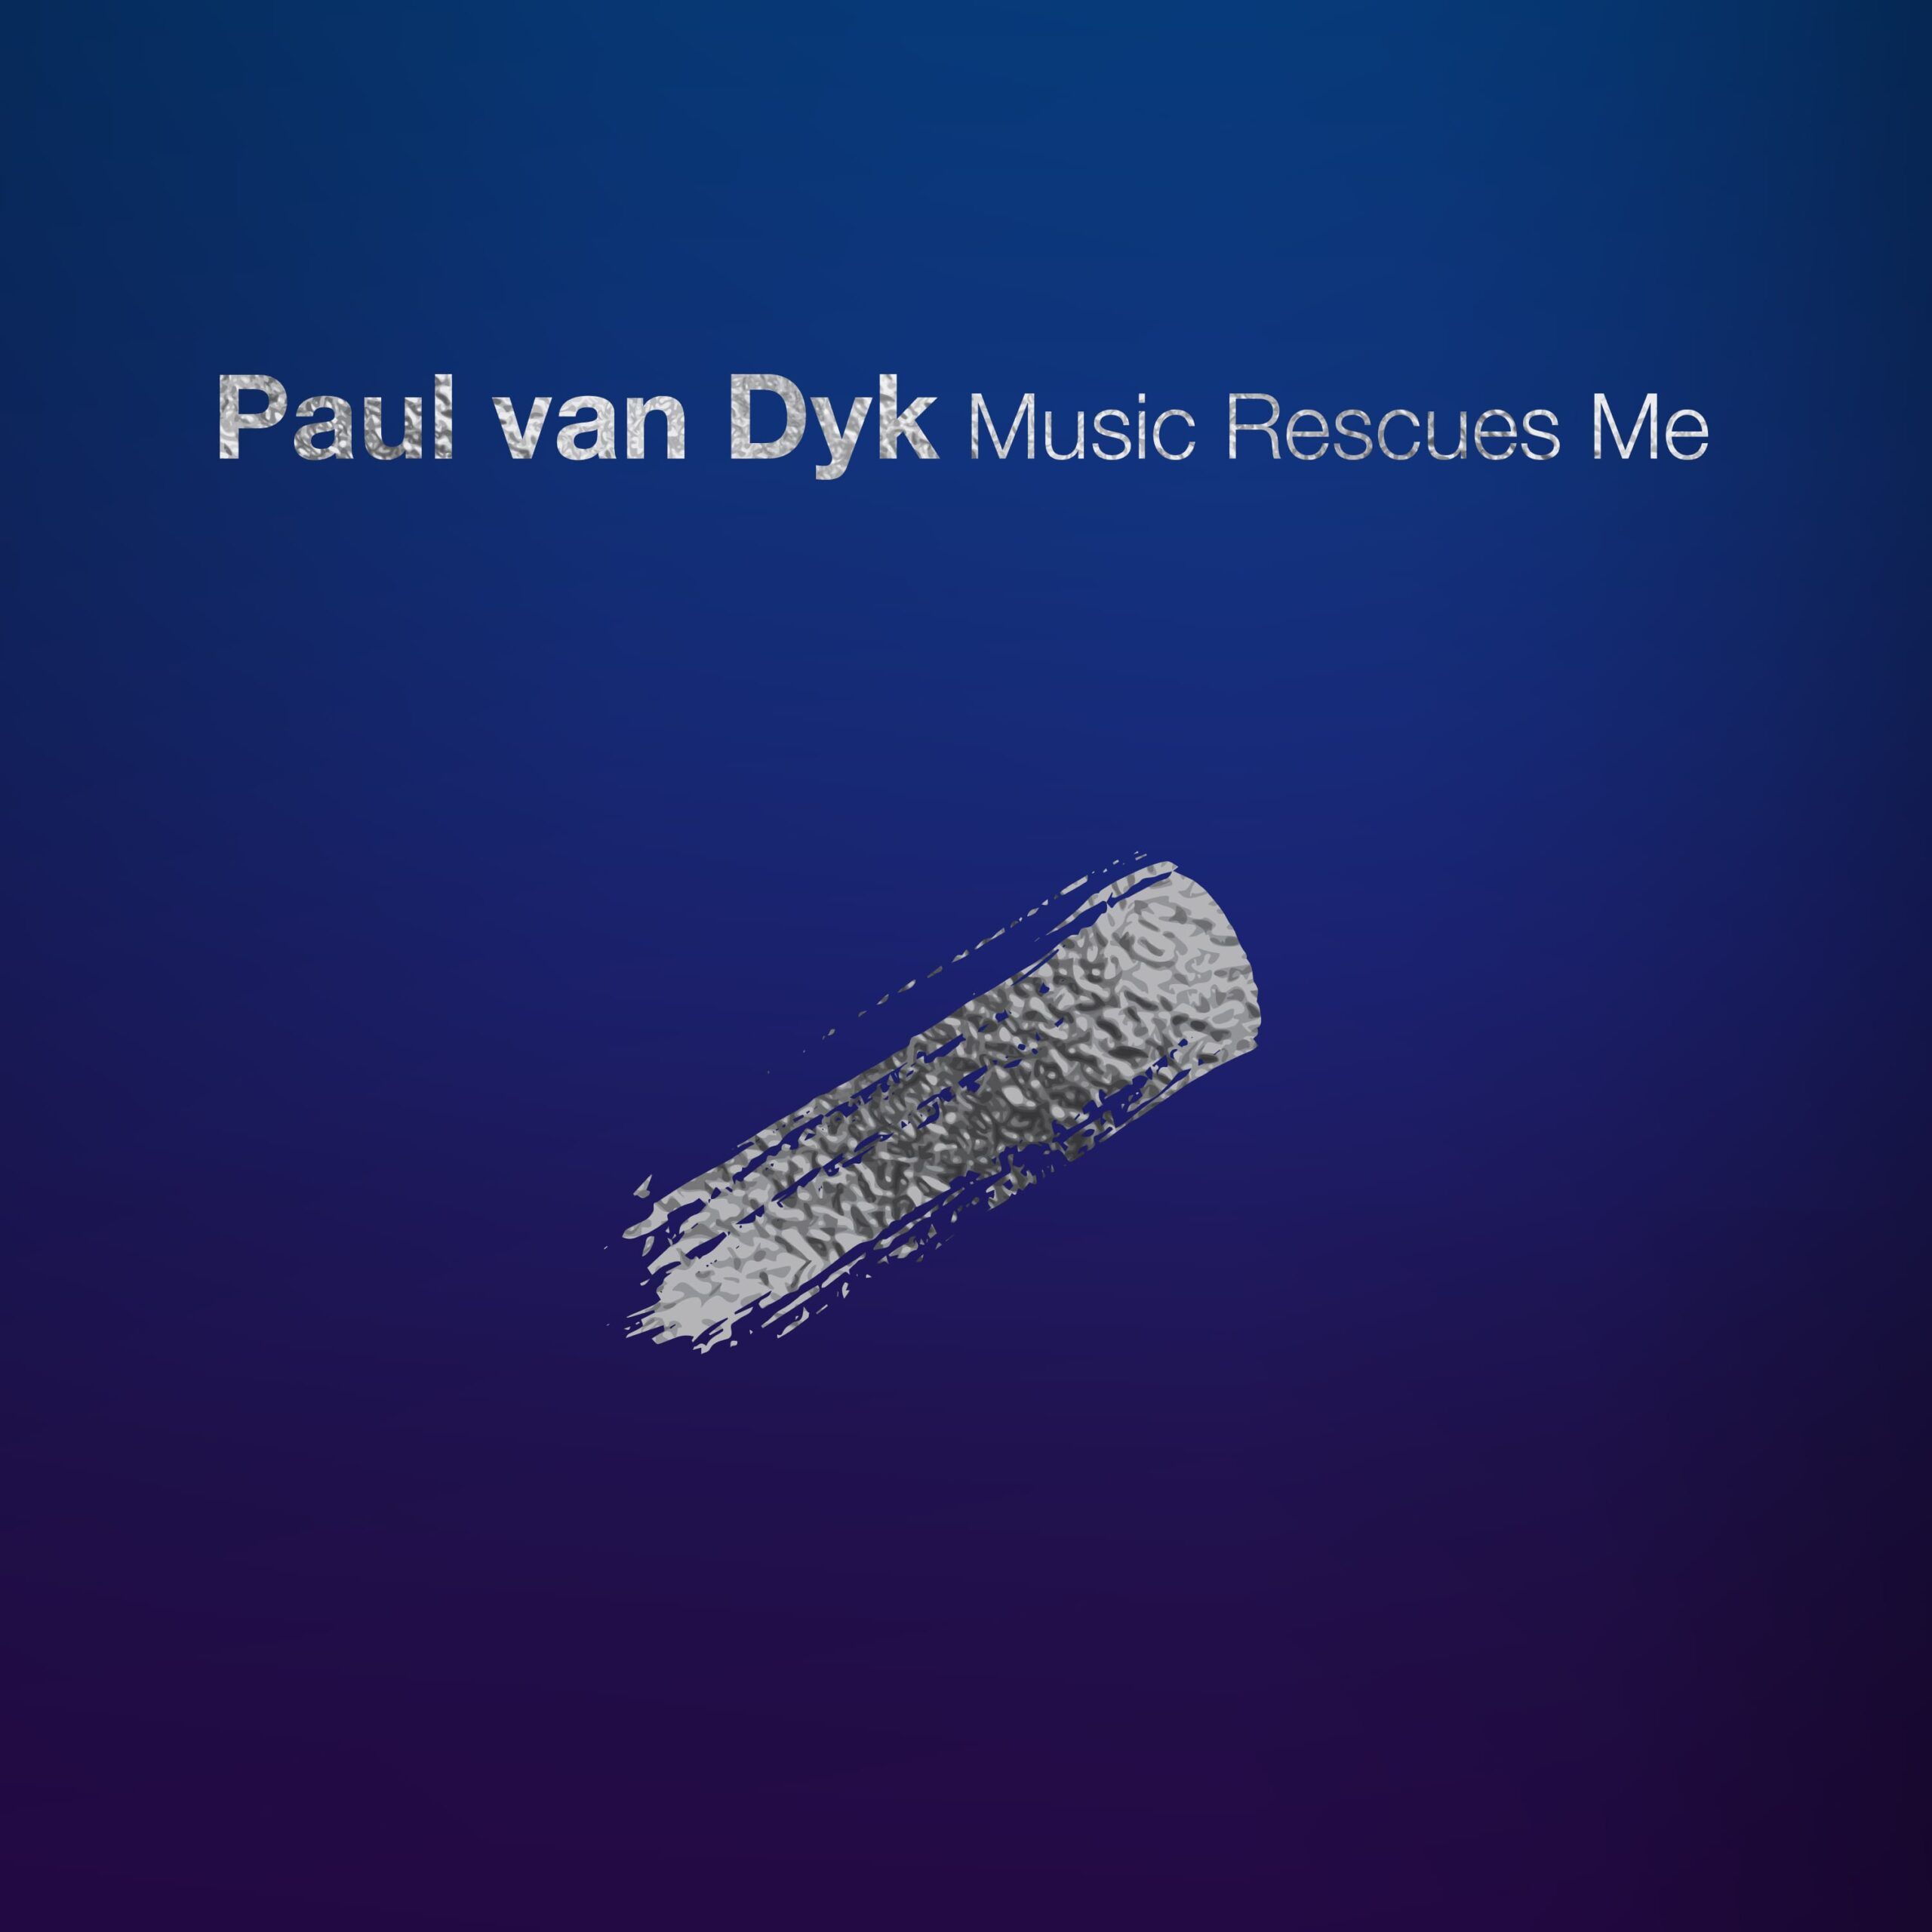 paul_van_dyk_-_music_rescues_me_announce_hd.jpg